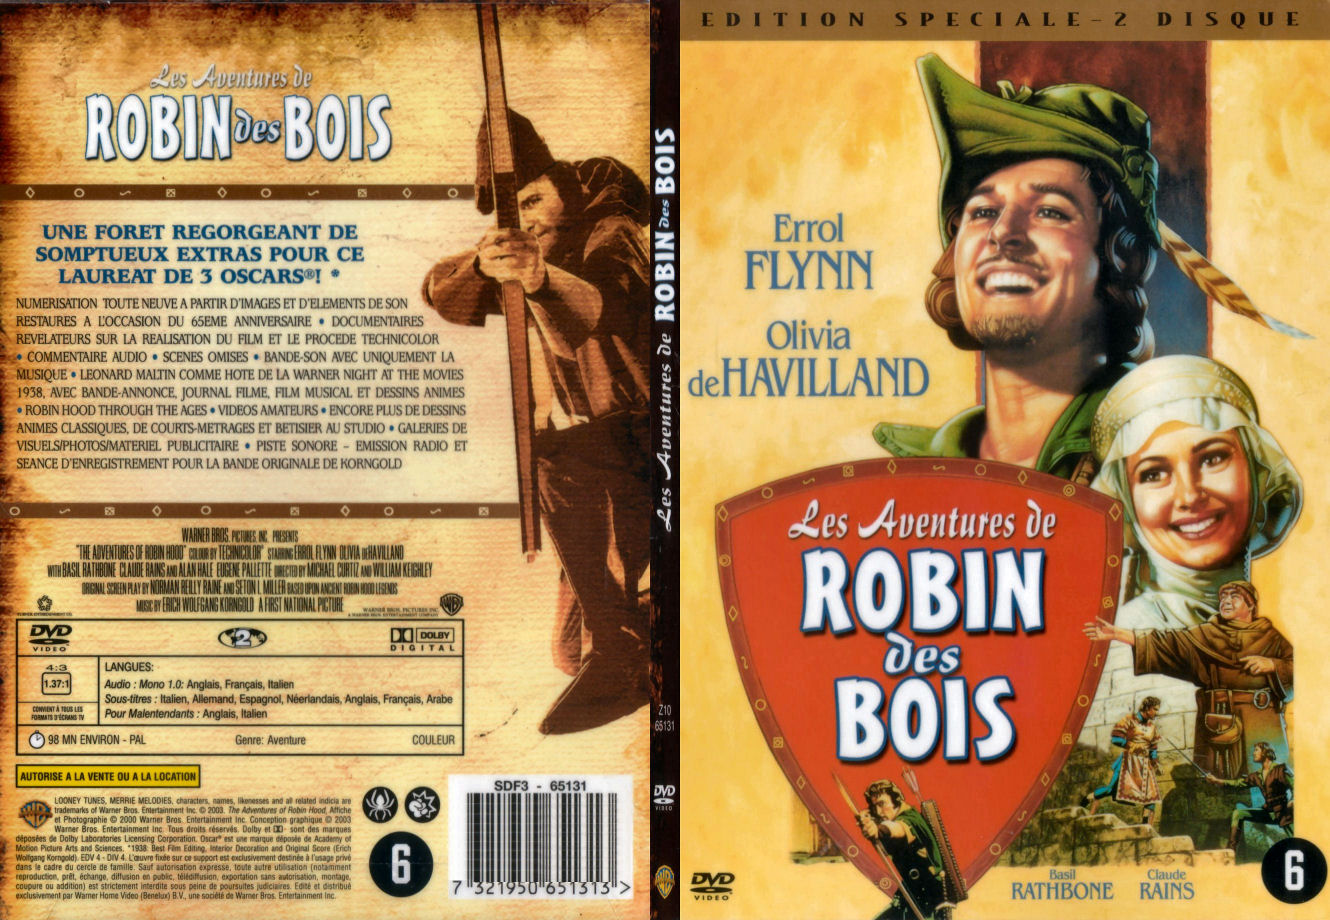 Jaquette DVD Les aventures de Robin des bois (1938) - SLIM